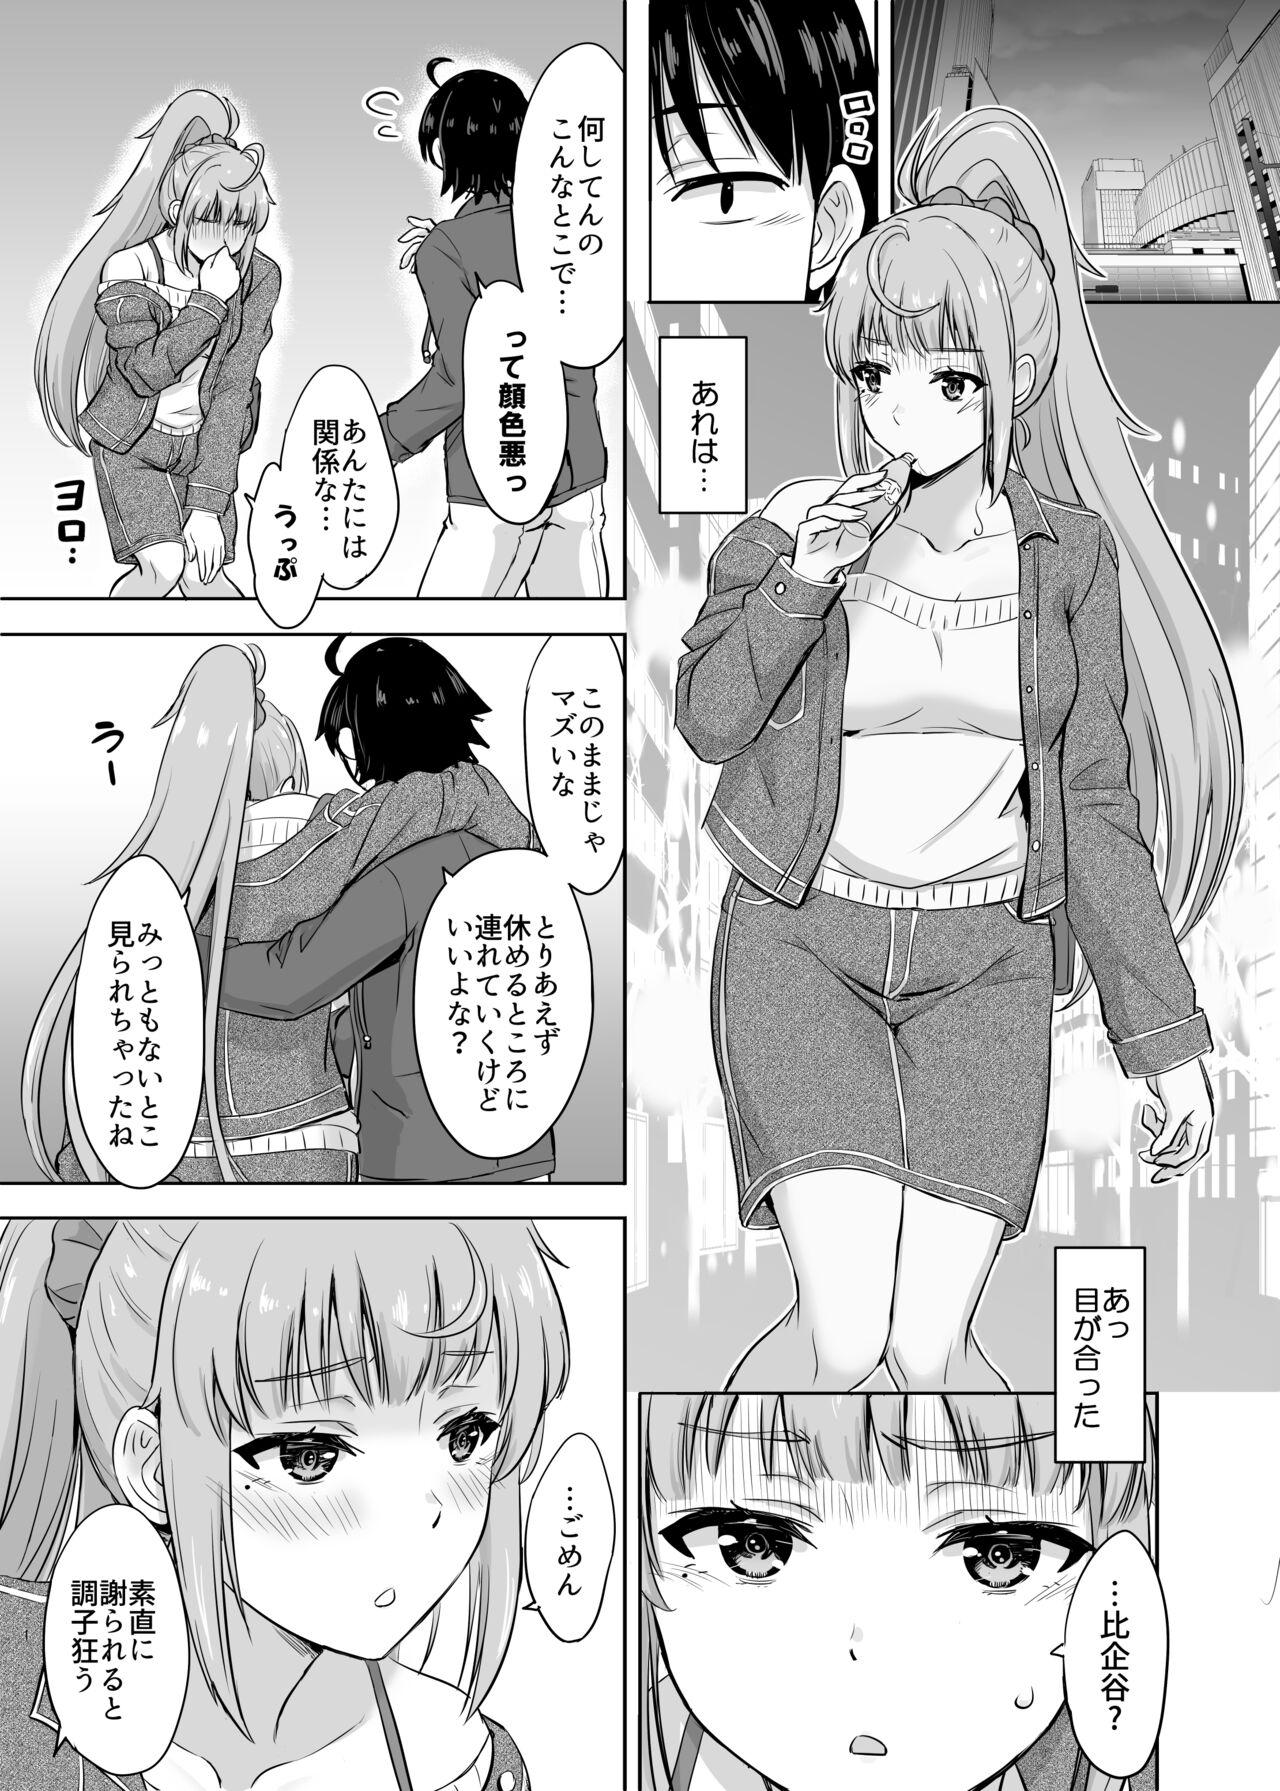 Office Sex Ashi-san Saki Saki Manga - Yahari ore no seishun love come wa machigatteiru Gay Public - Page 1